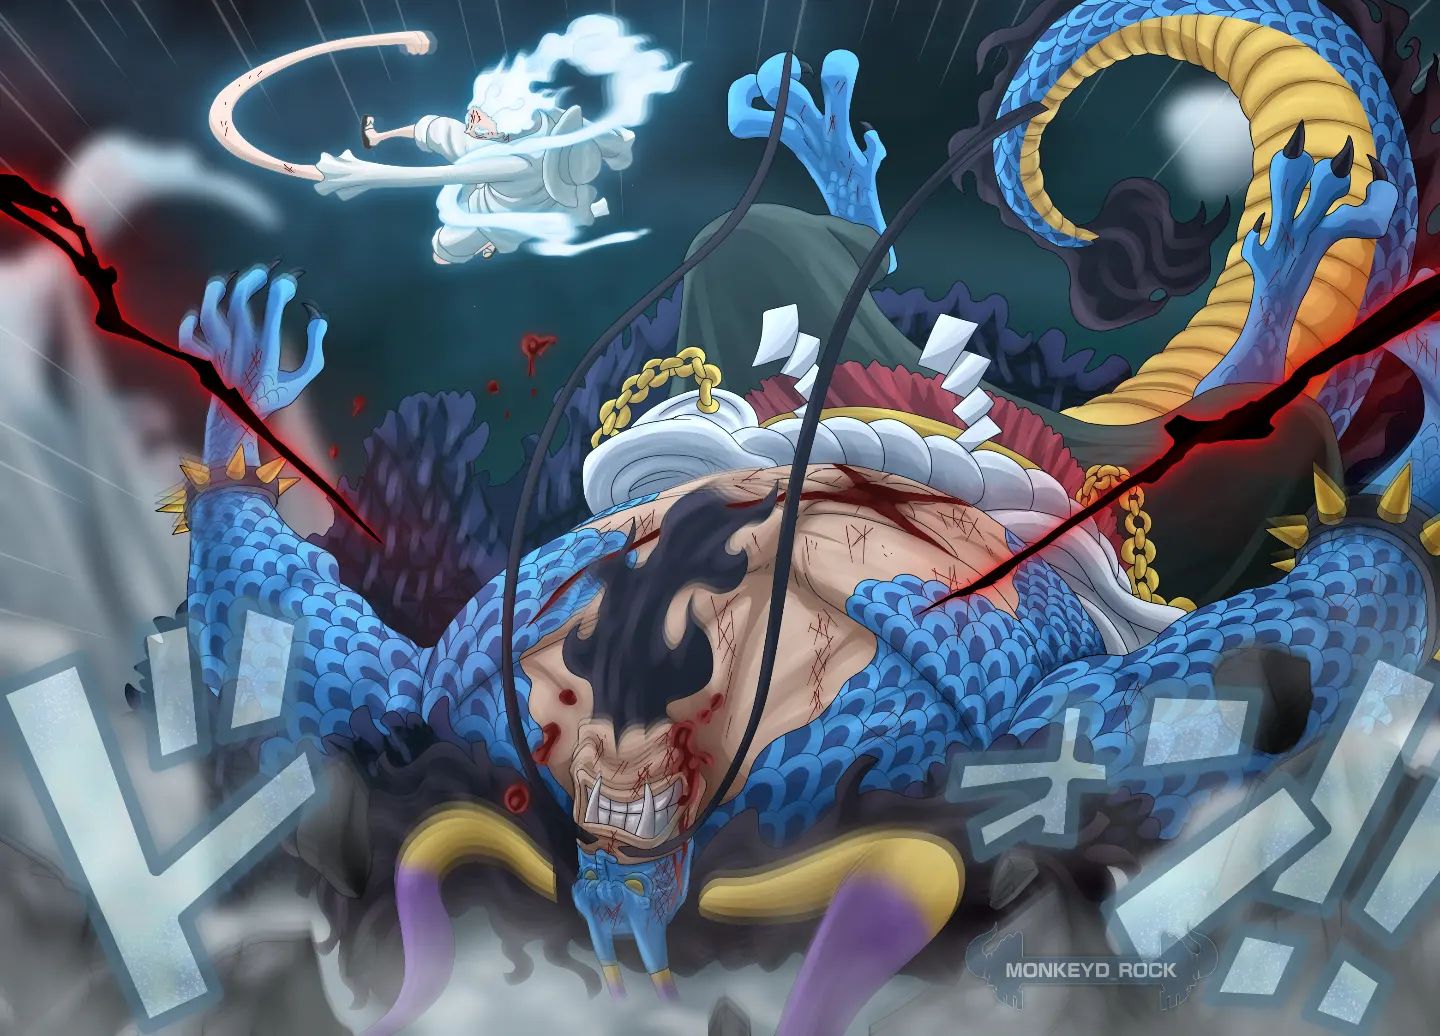 Luffy vs kaido. Colorização do mangá 1045 de one piece por @monkeyd_rock.